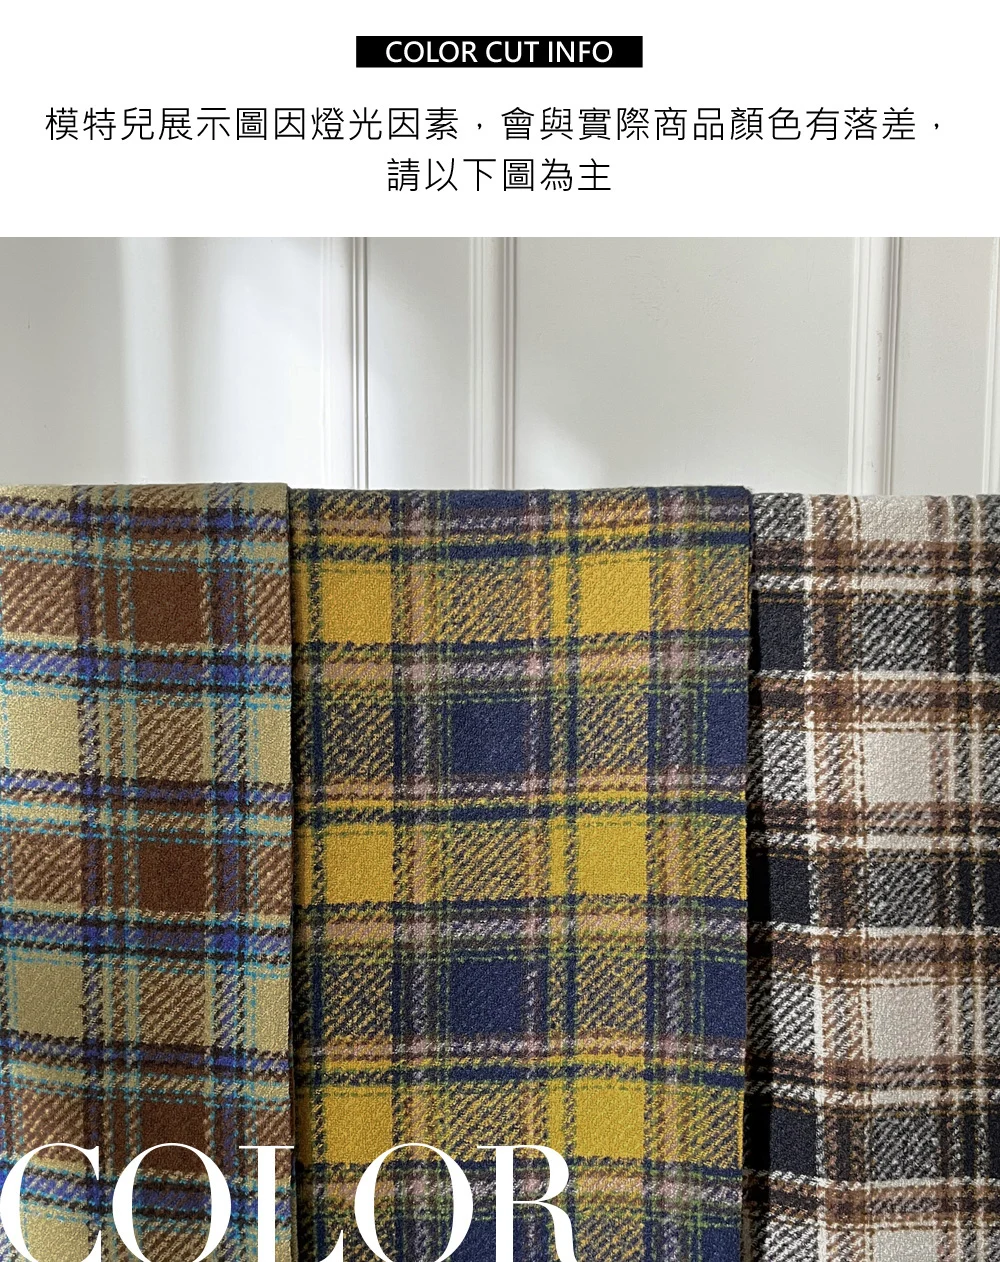 經典貴族風格子紋保暖圍巾